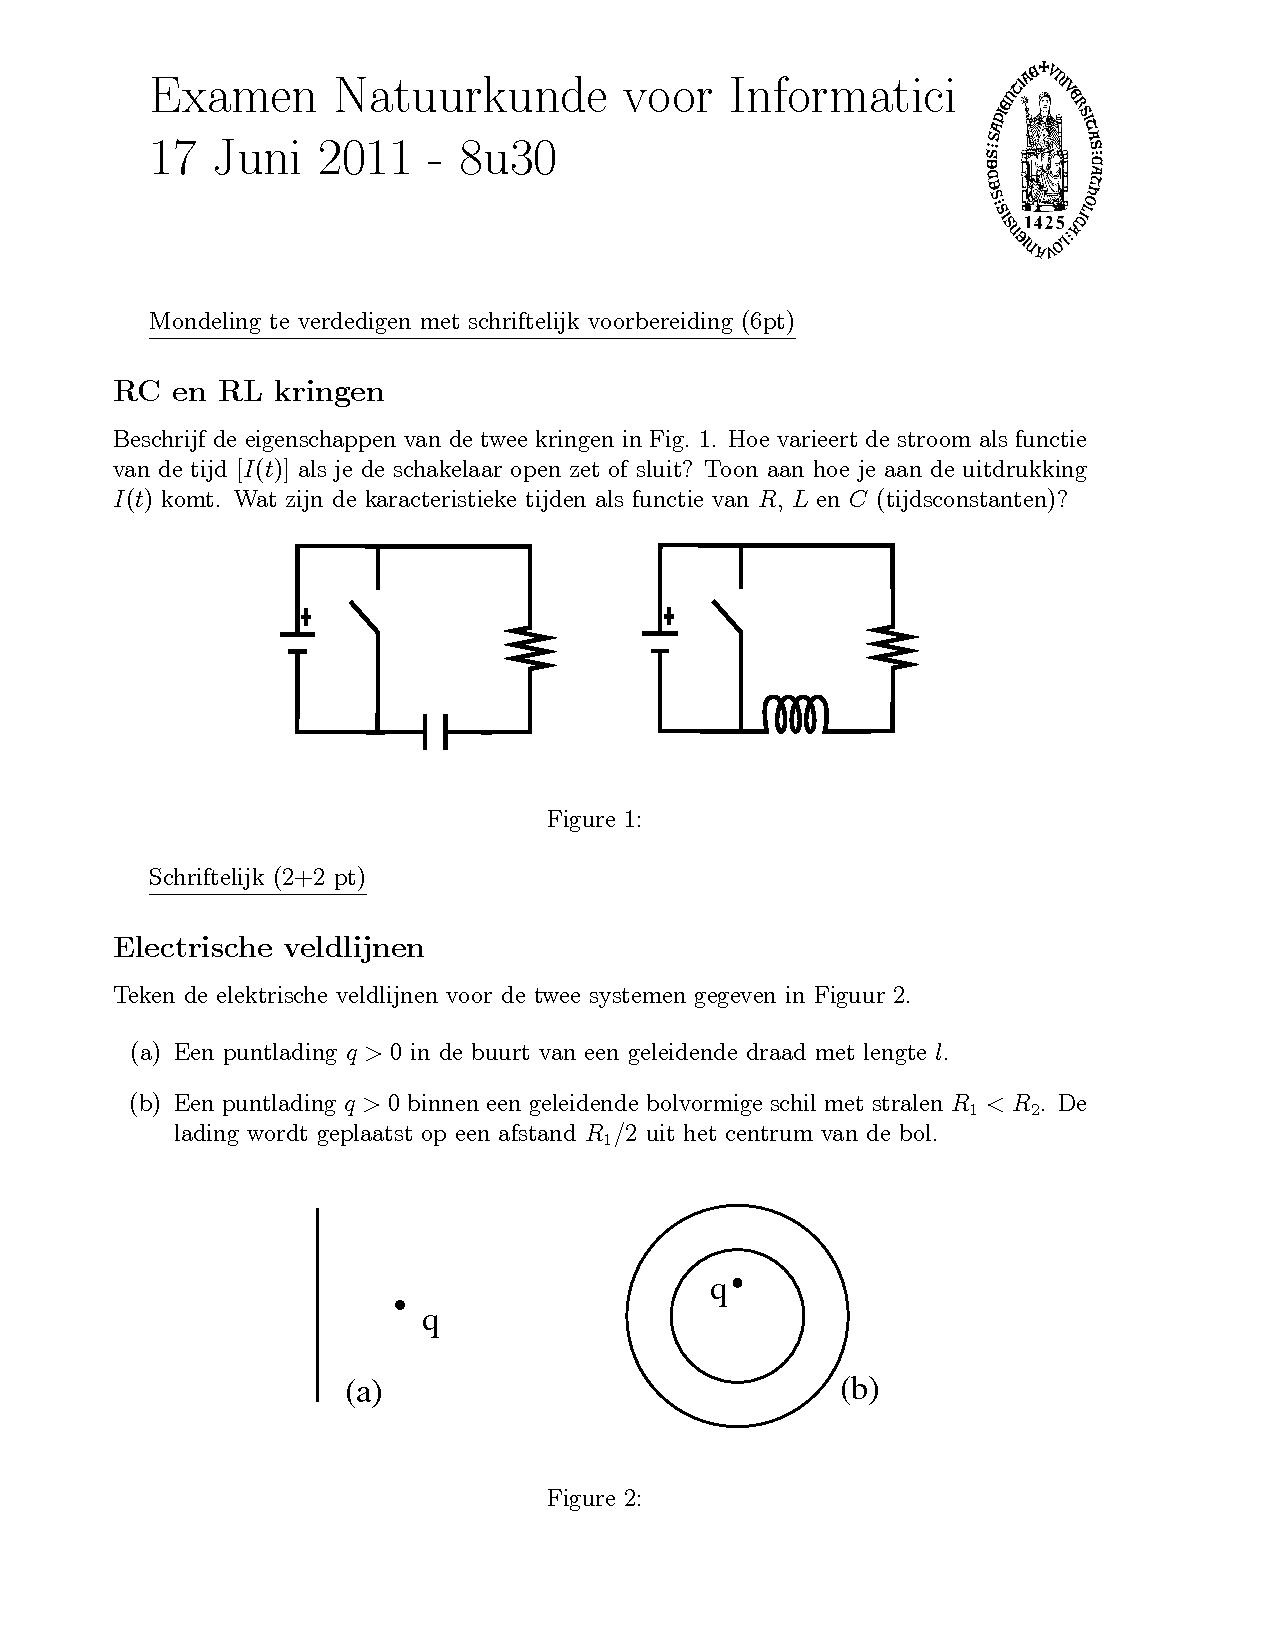 2 pdf bestanden vergelijken electriciteit